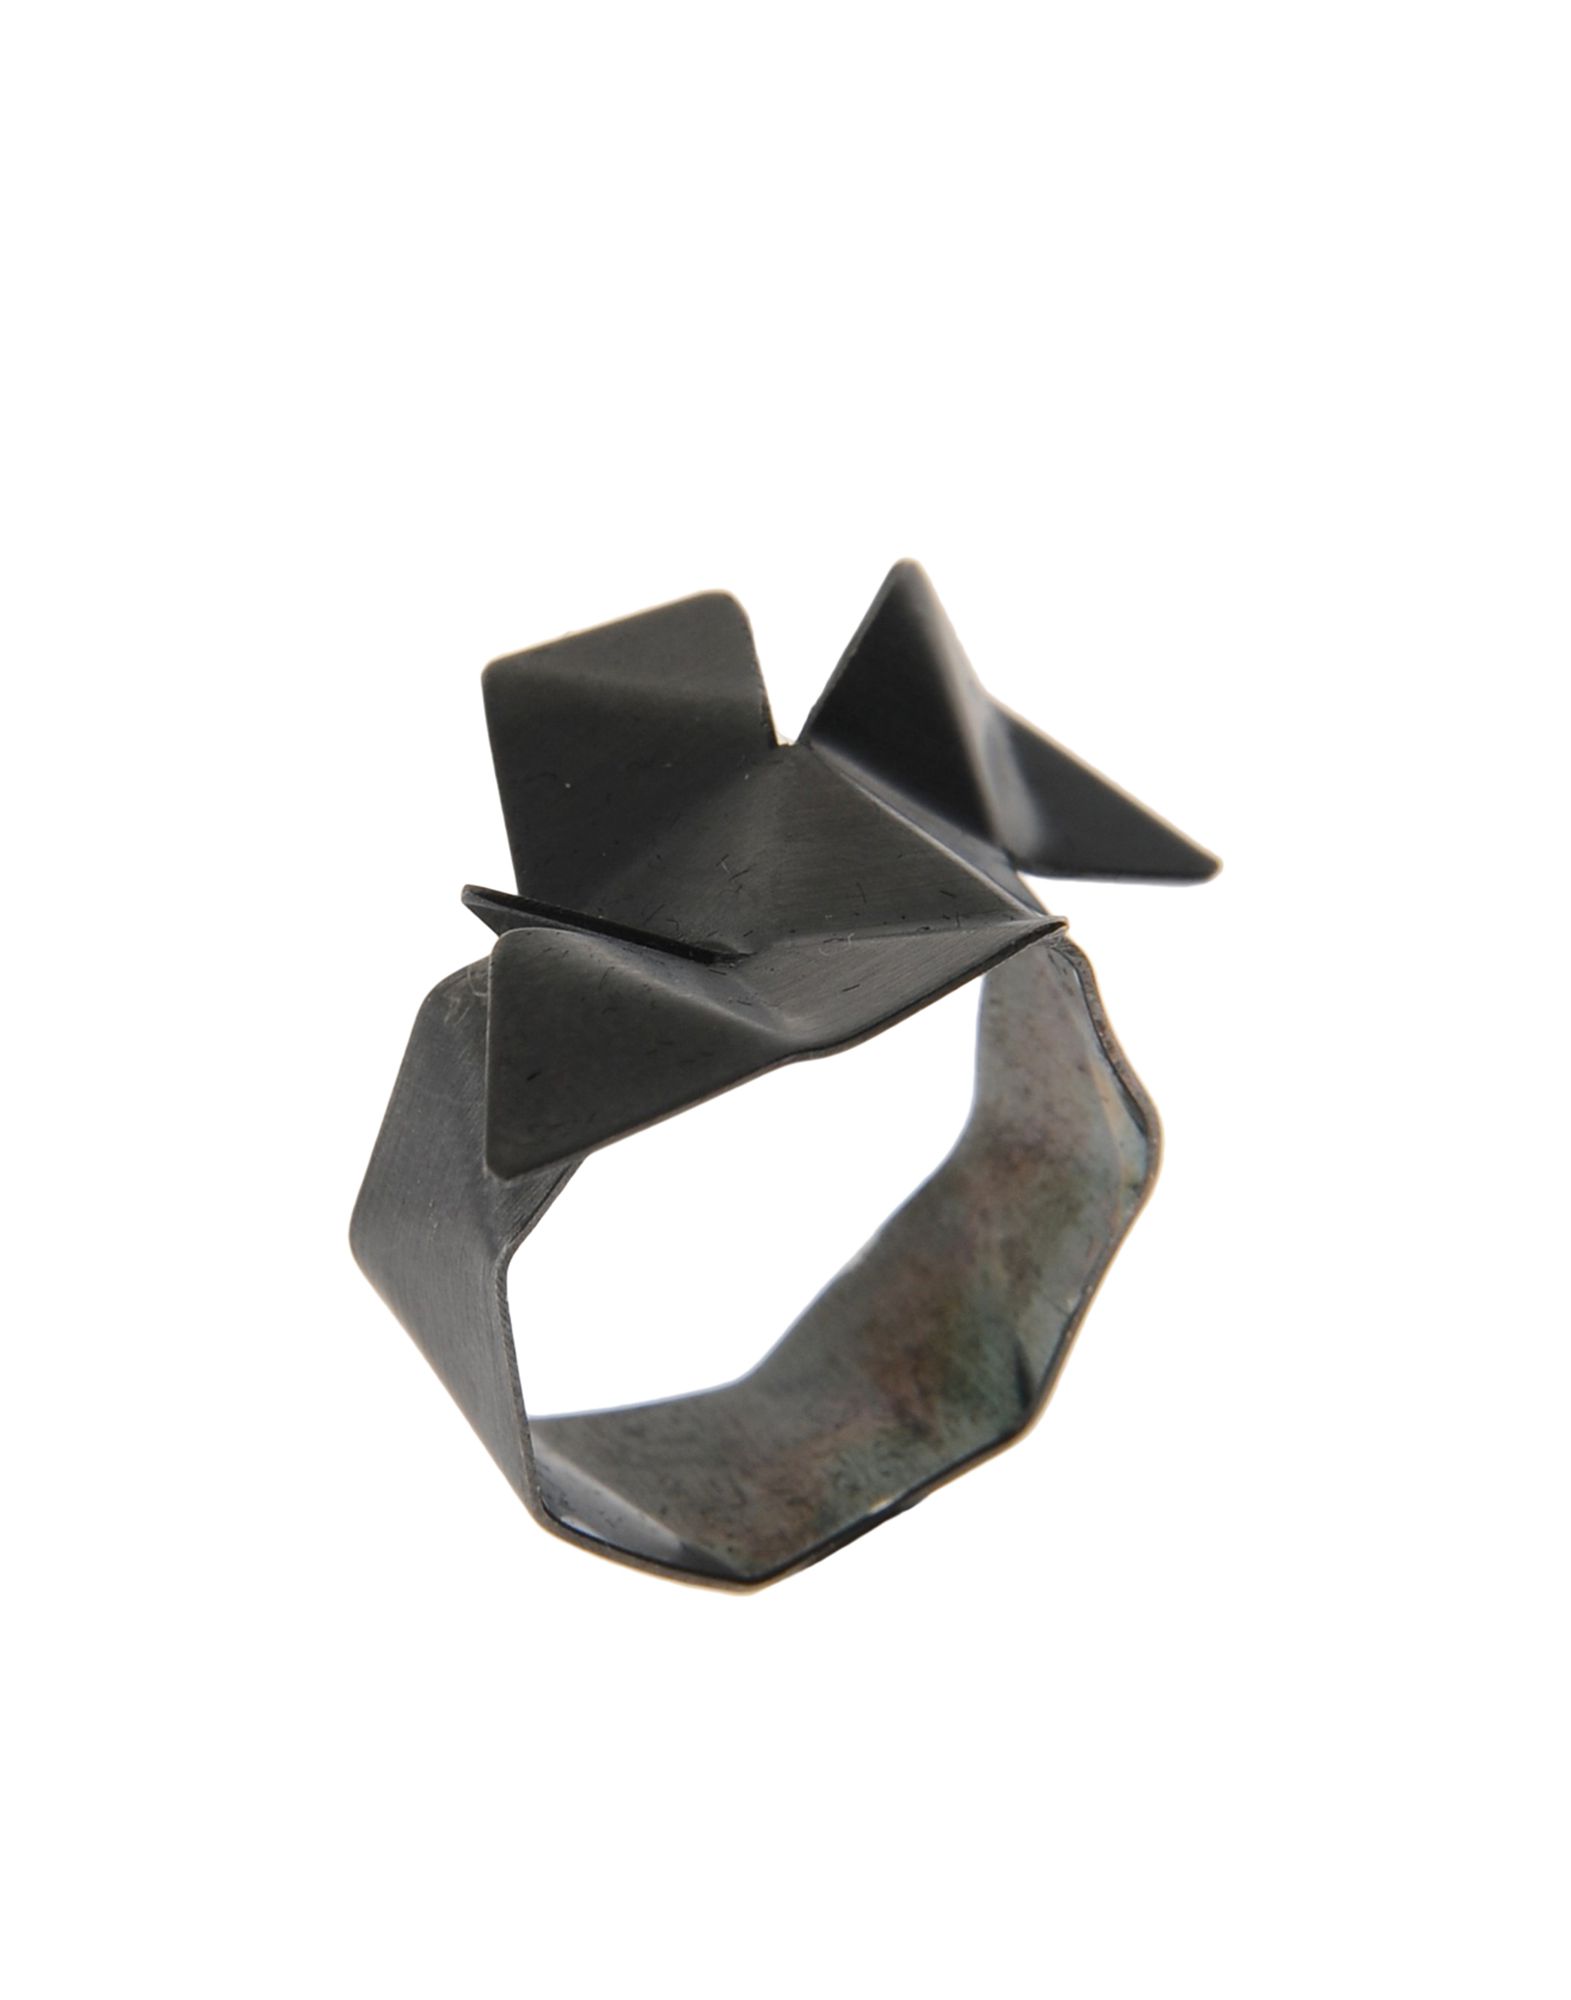 《送料無料》FIRST PEOPLE FIRST レディース 指輪 グレー M シルバー925/1000 Origami Ring Silver